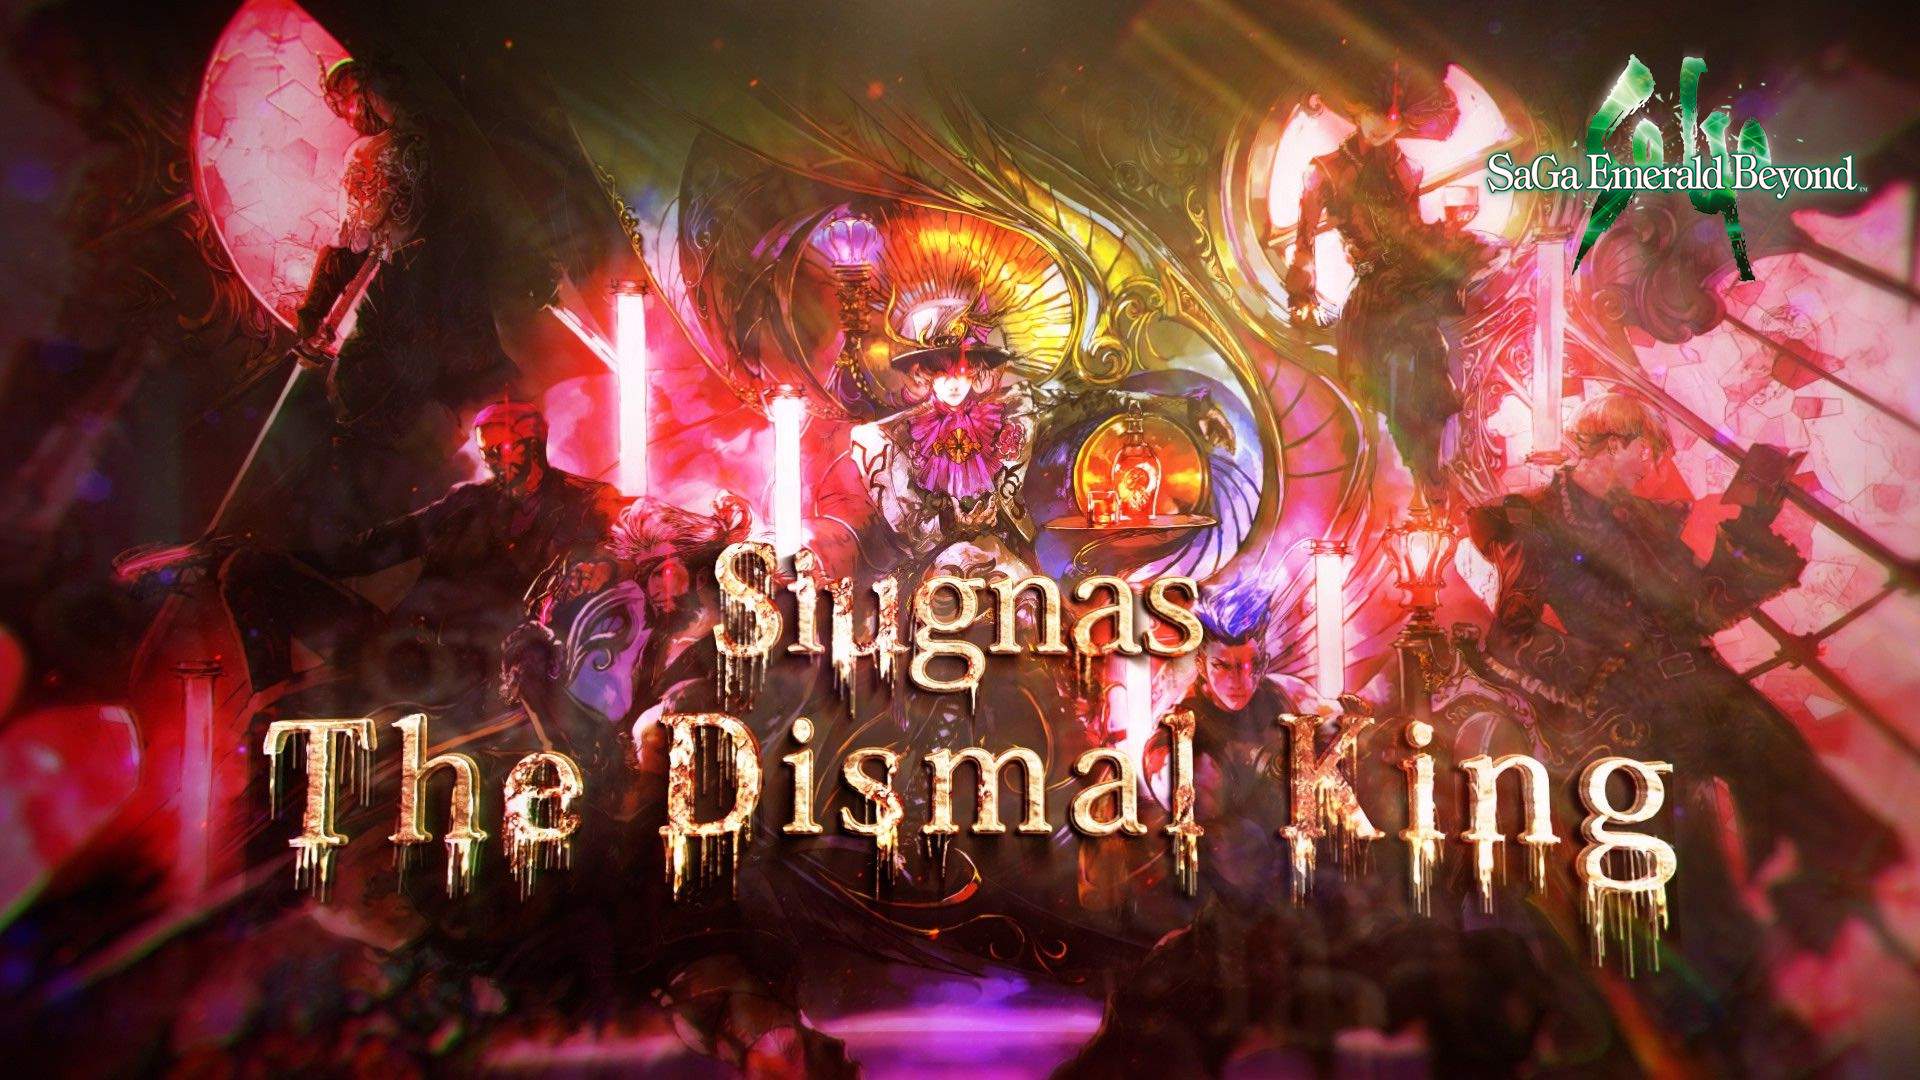 Ein Bild von Siugnas mit dem Text: Siugnas The Dismal King